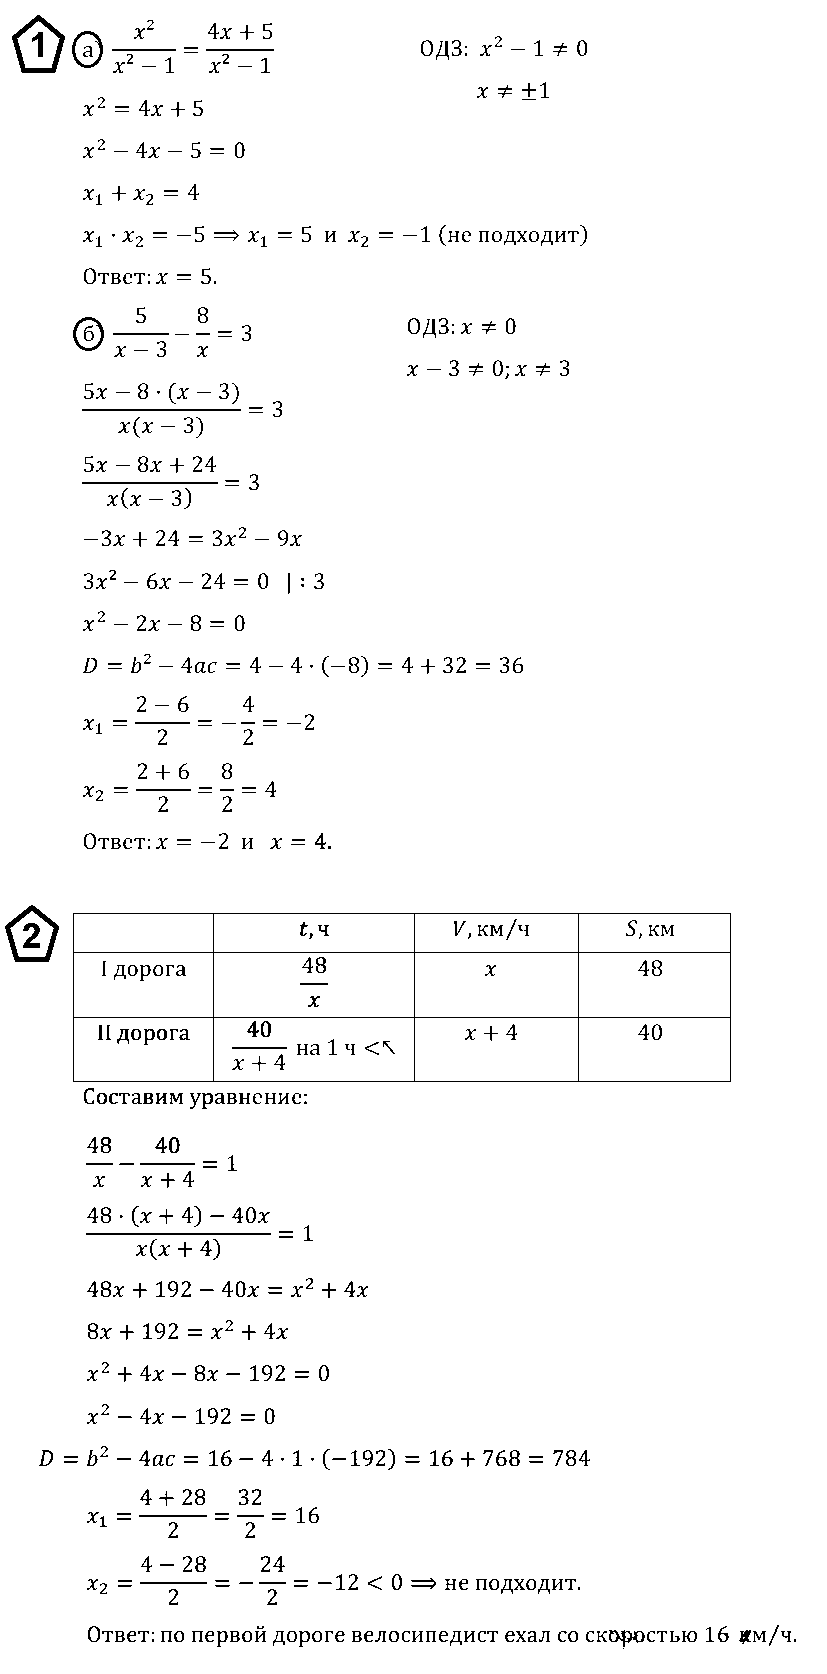 Контрольная работа по алгебре 8 класс номер 6 дробные рациональные уравнения